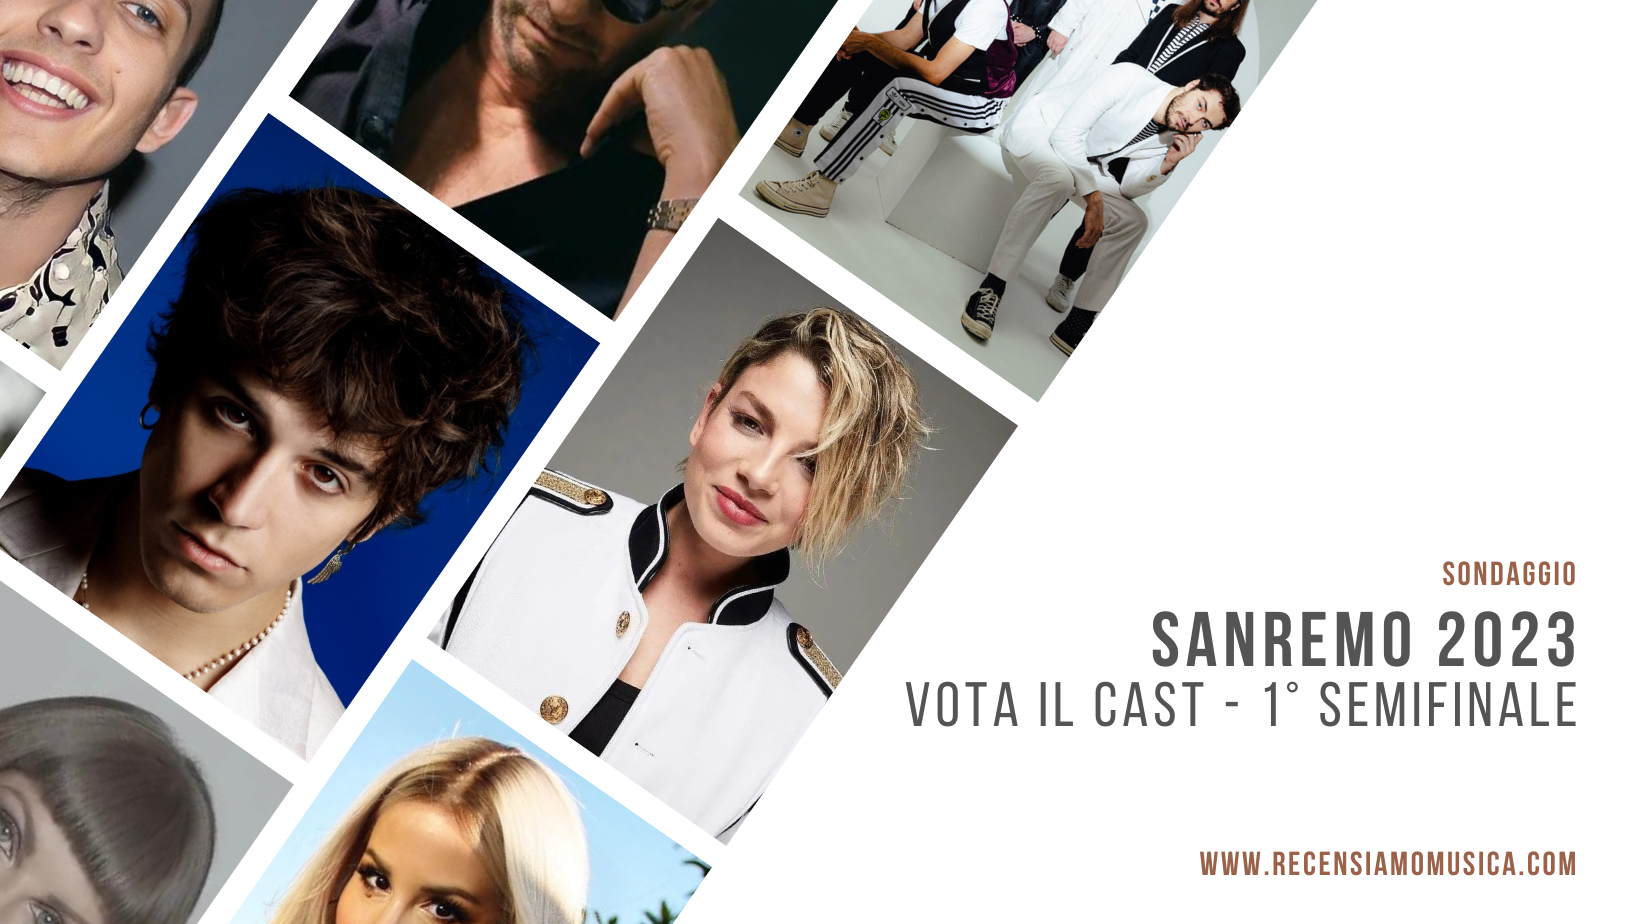 Sanremo 2023 cast sondaggio